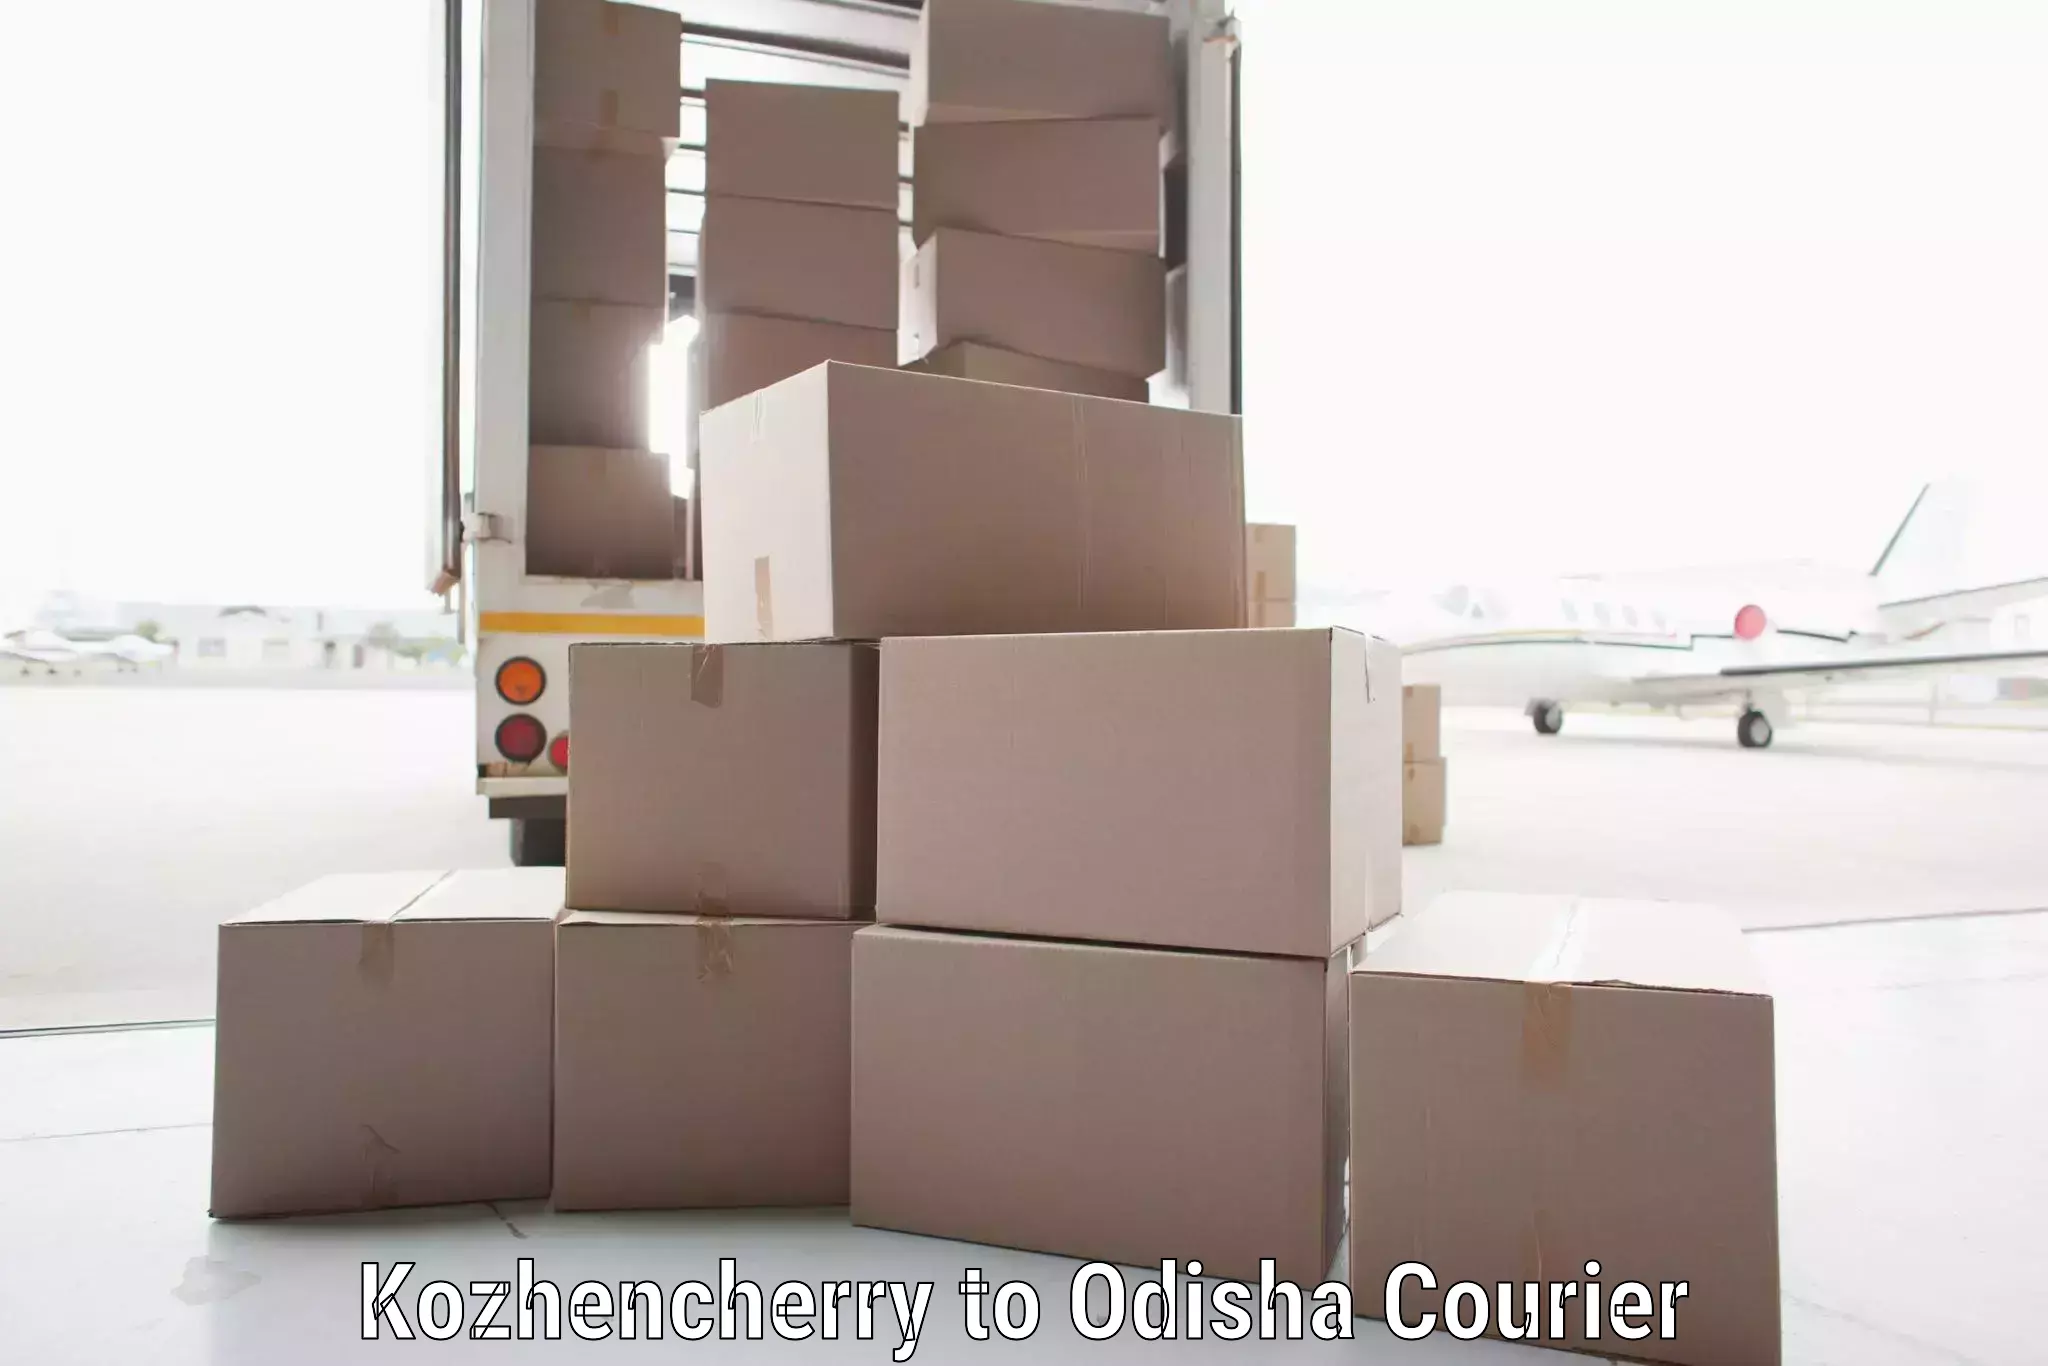 Pharmaceutical courier Kozhencherry to Paradip Port